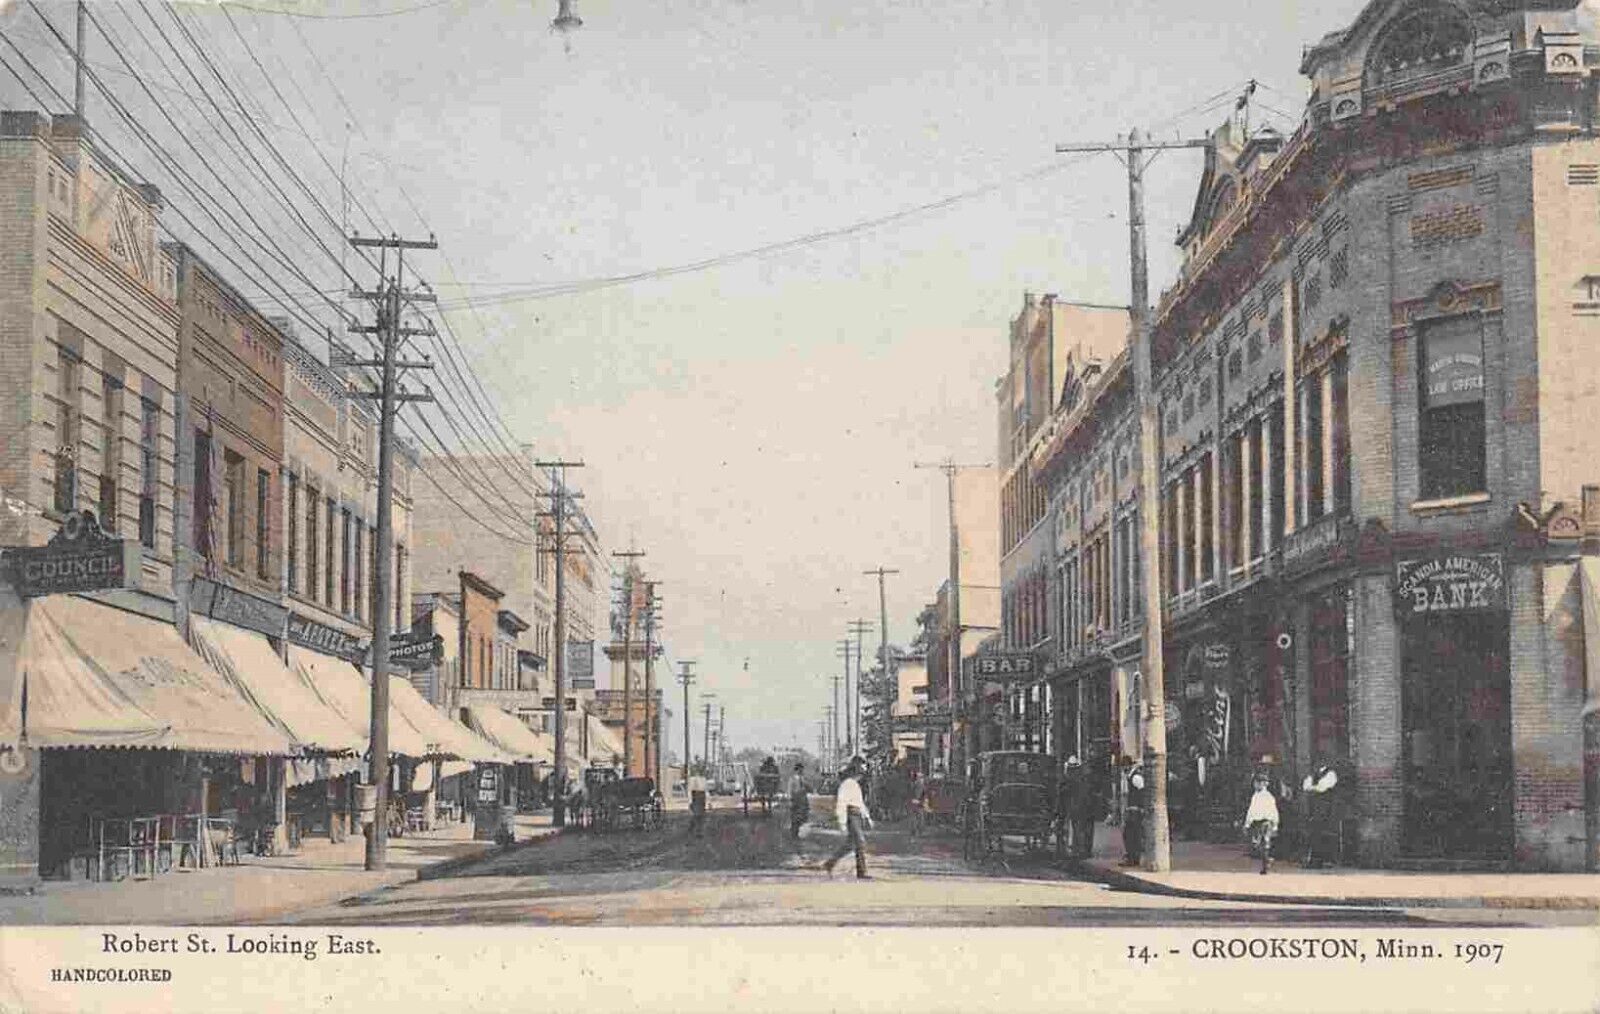 Robert Street Looking East Crookston Minnesota 1908 postcard